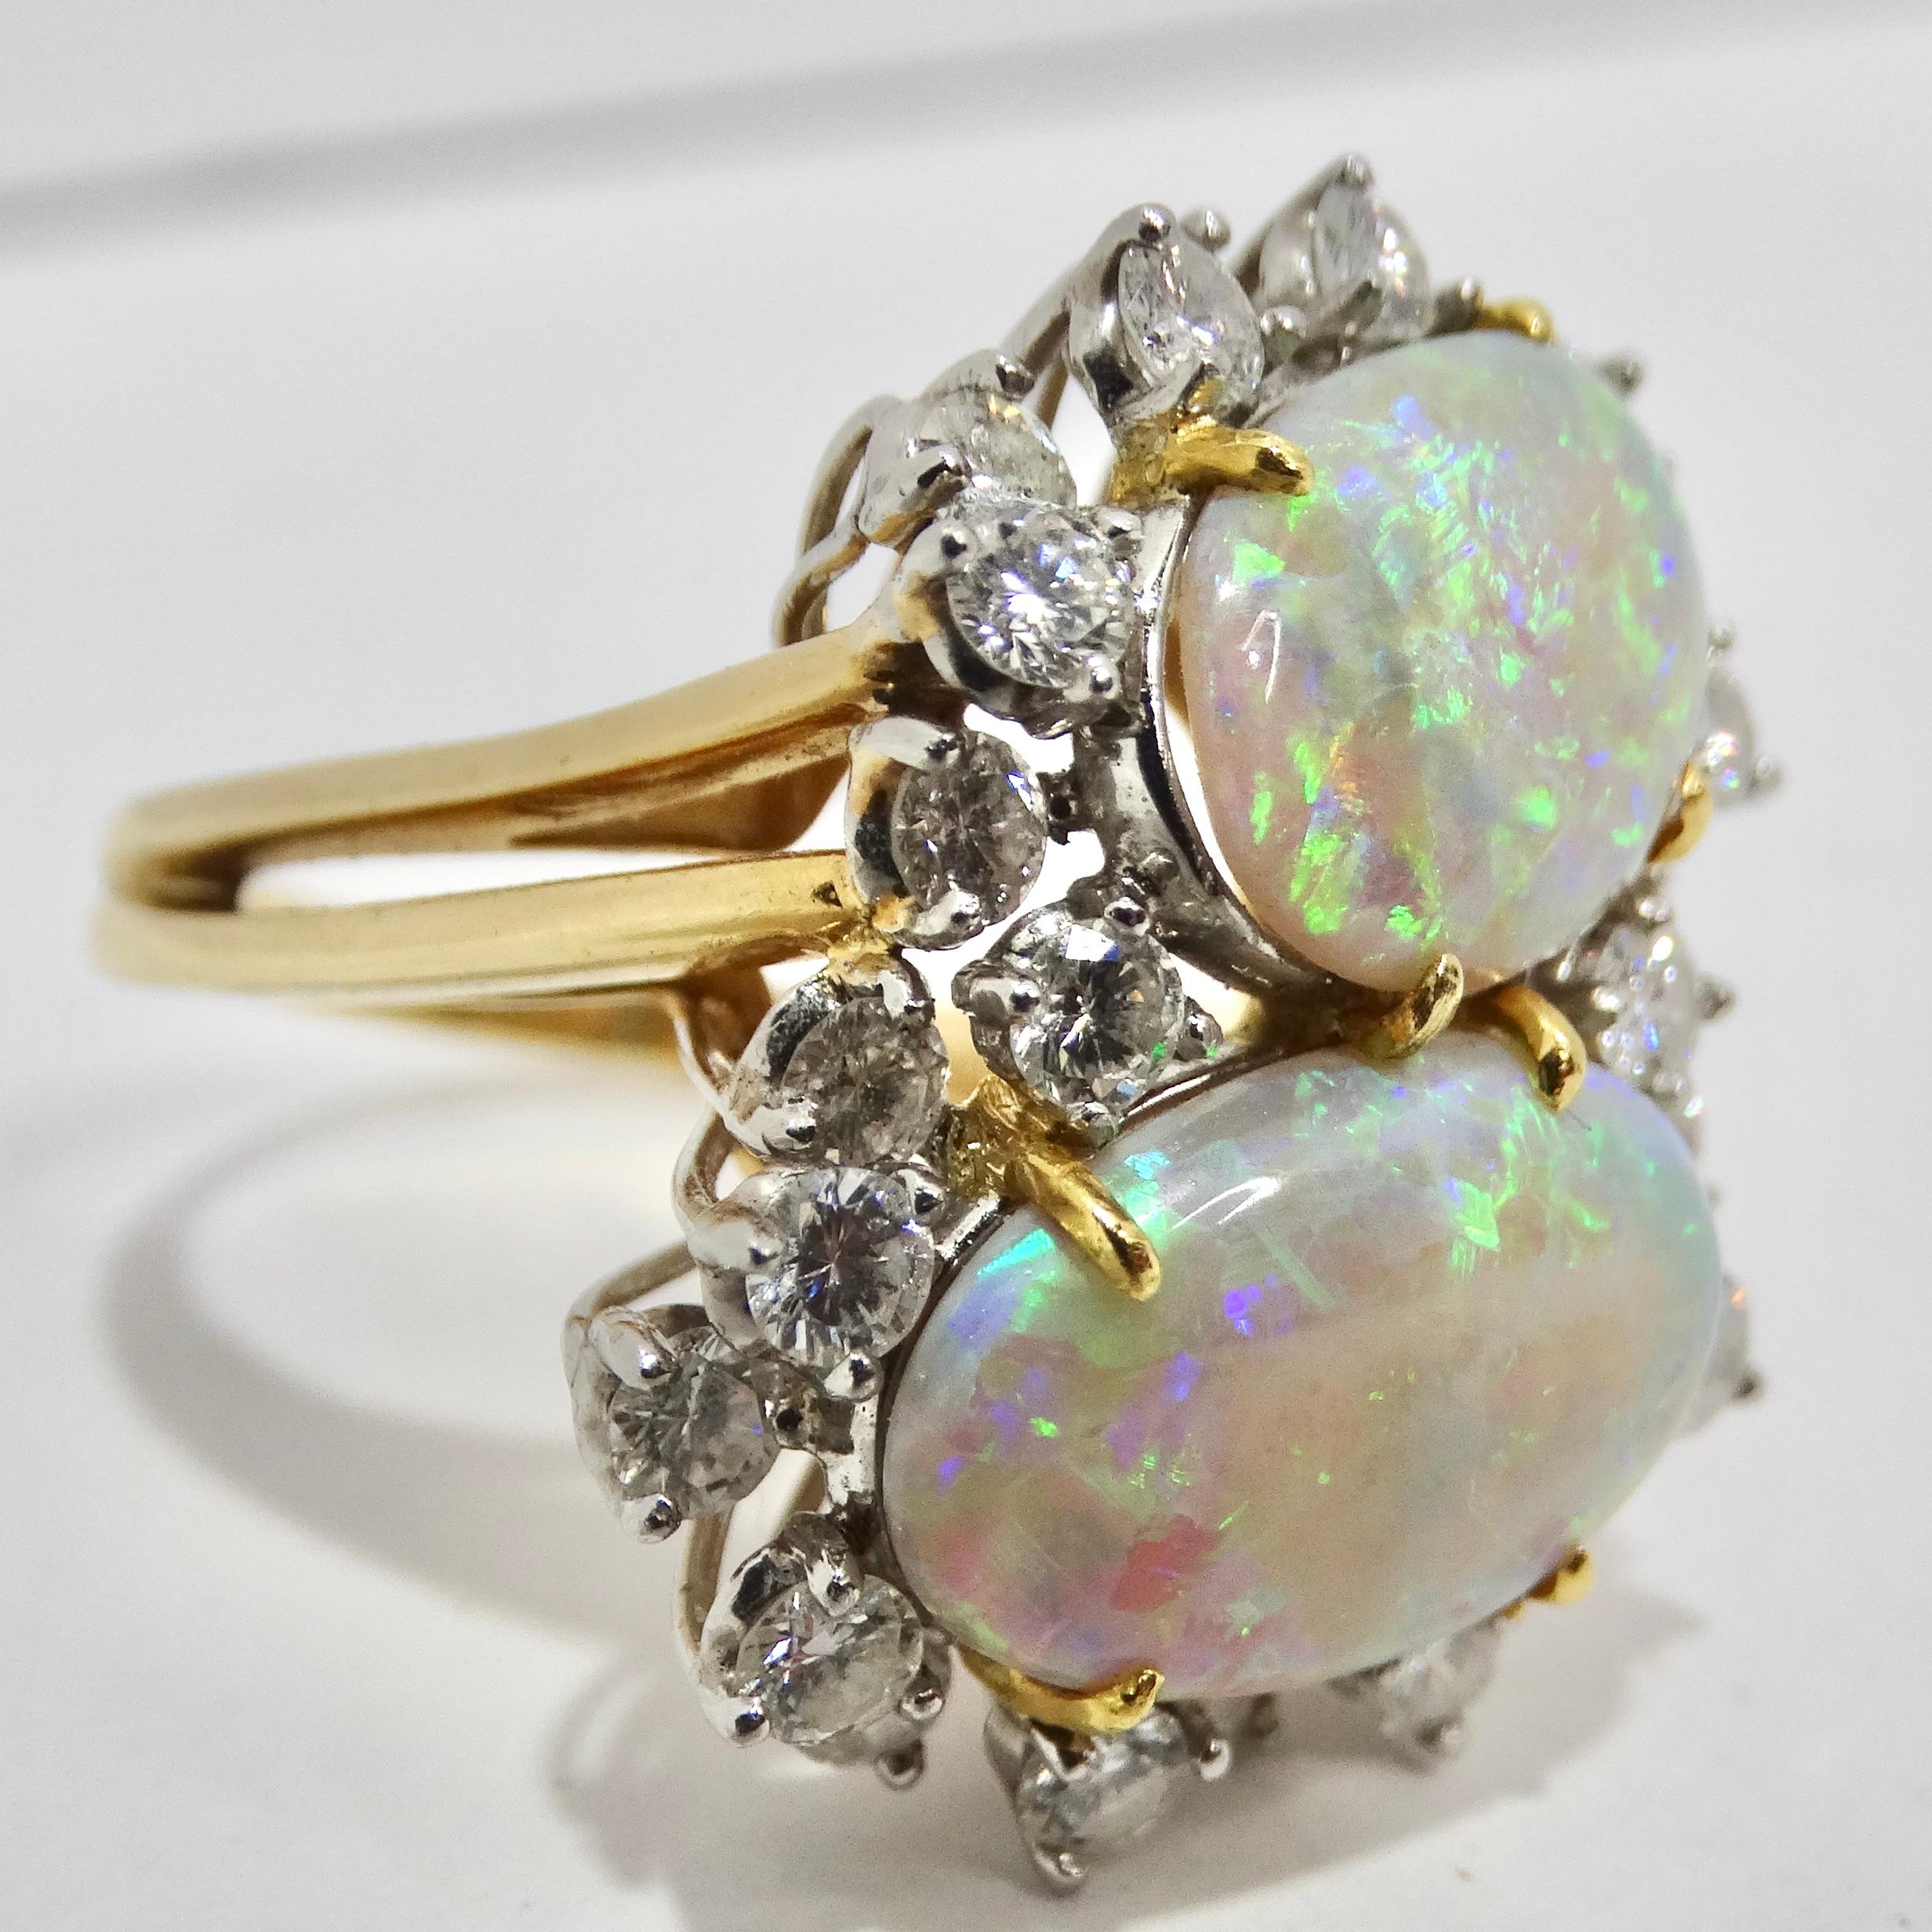 Rehaussez votre collection de bijoux avec notre exquise bague à diamant en opale australienne étincelante. Fabriquée avec précision et passion, cette superbe bague en or 18 carats est une véritable incarnation du luxe et de l'élégance. Au cœur de